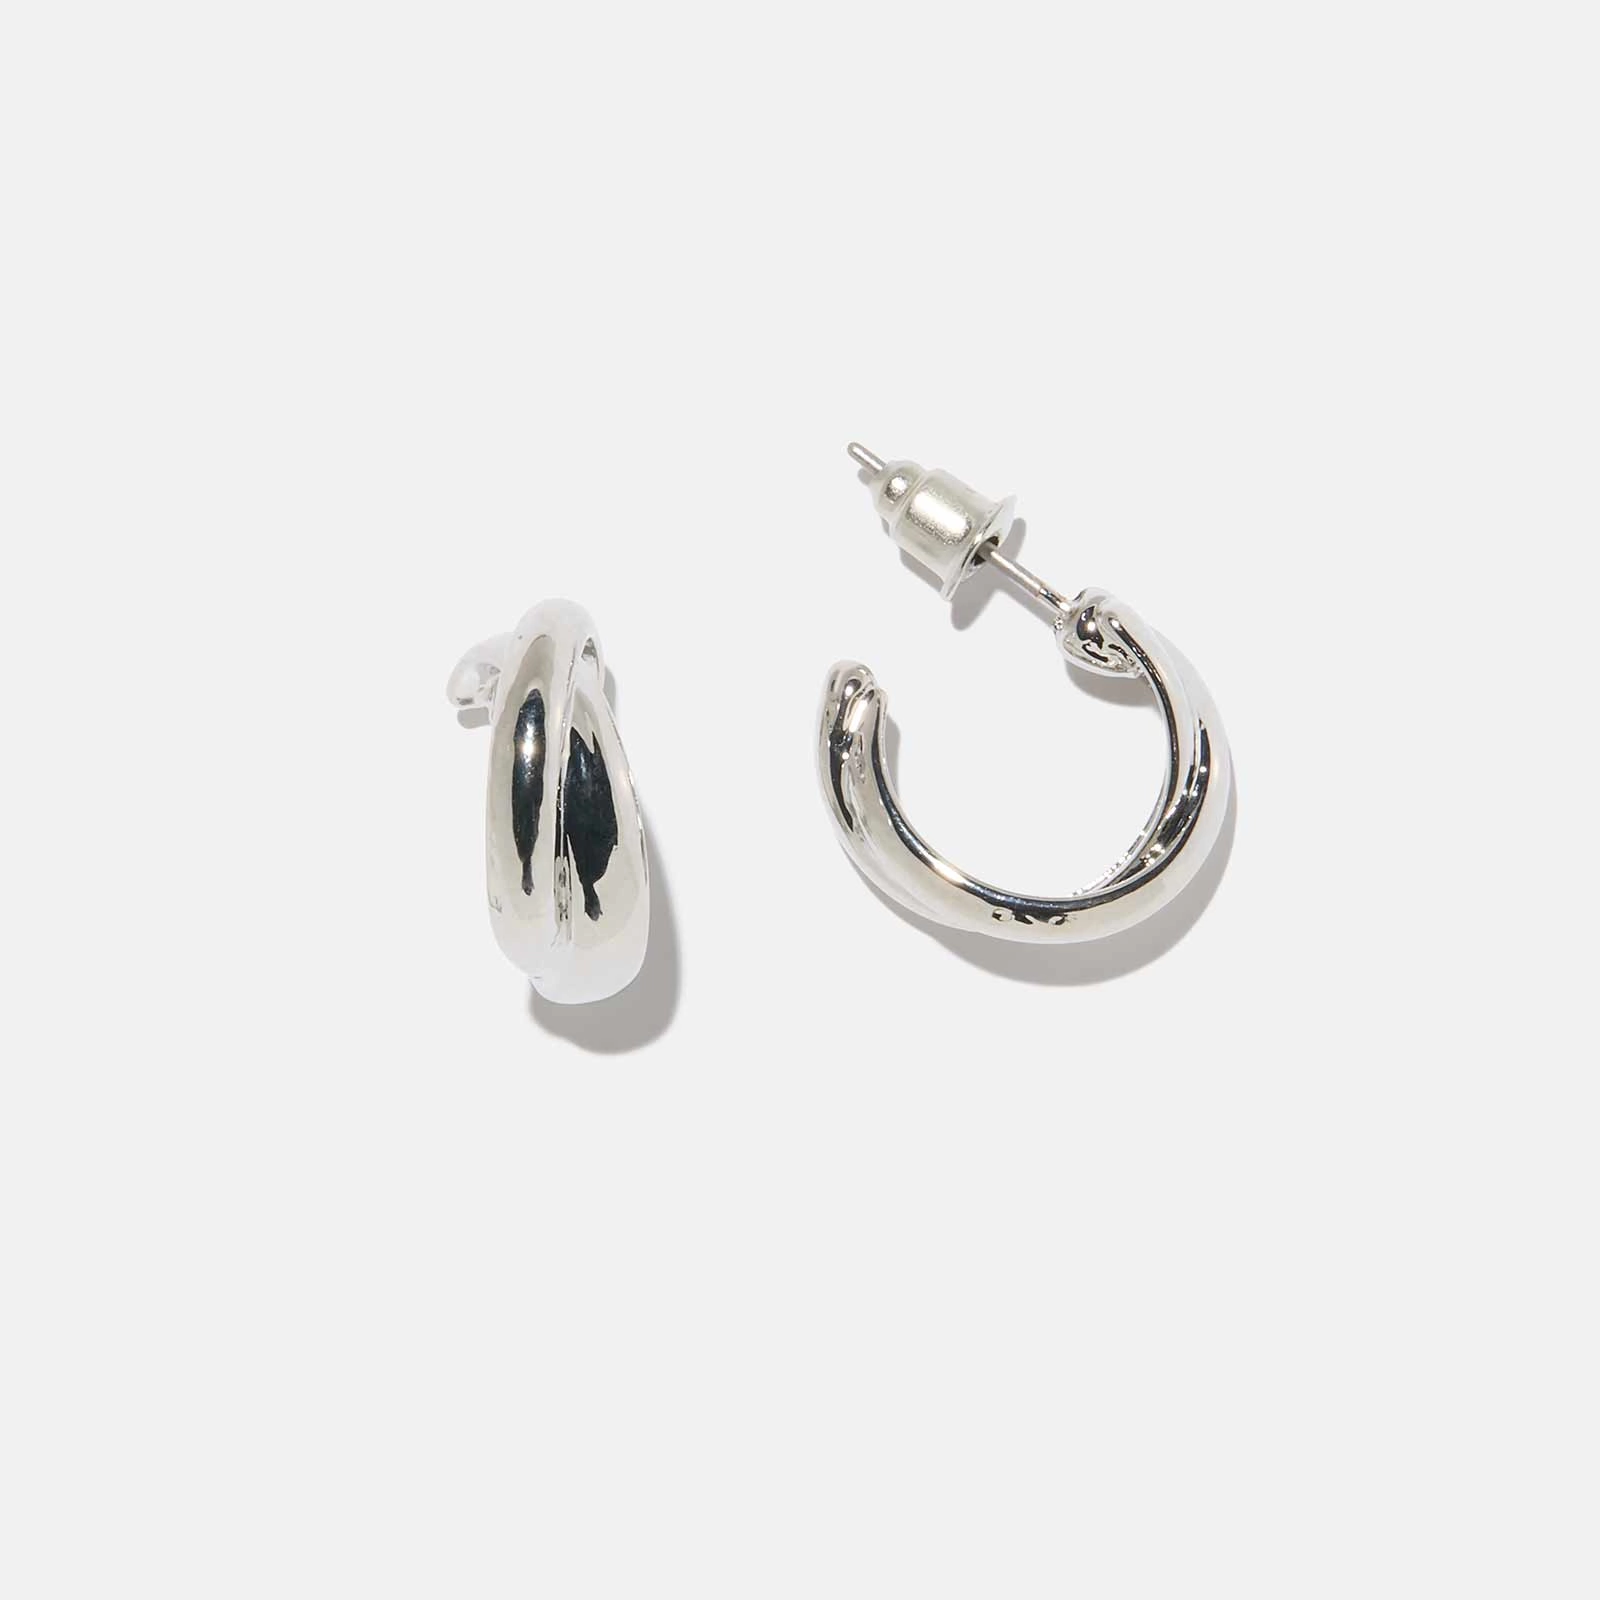 Silverfärgade örhängen - vridna hoops, 15mm